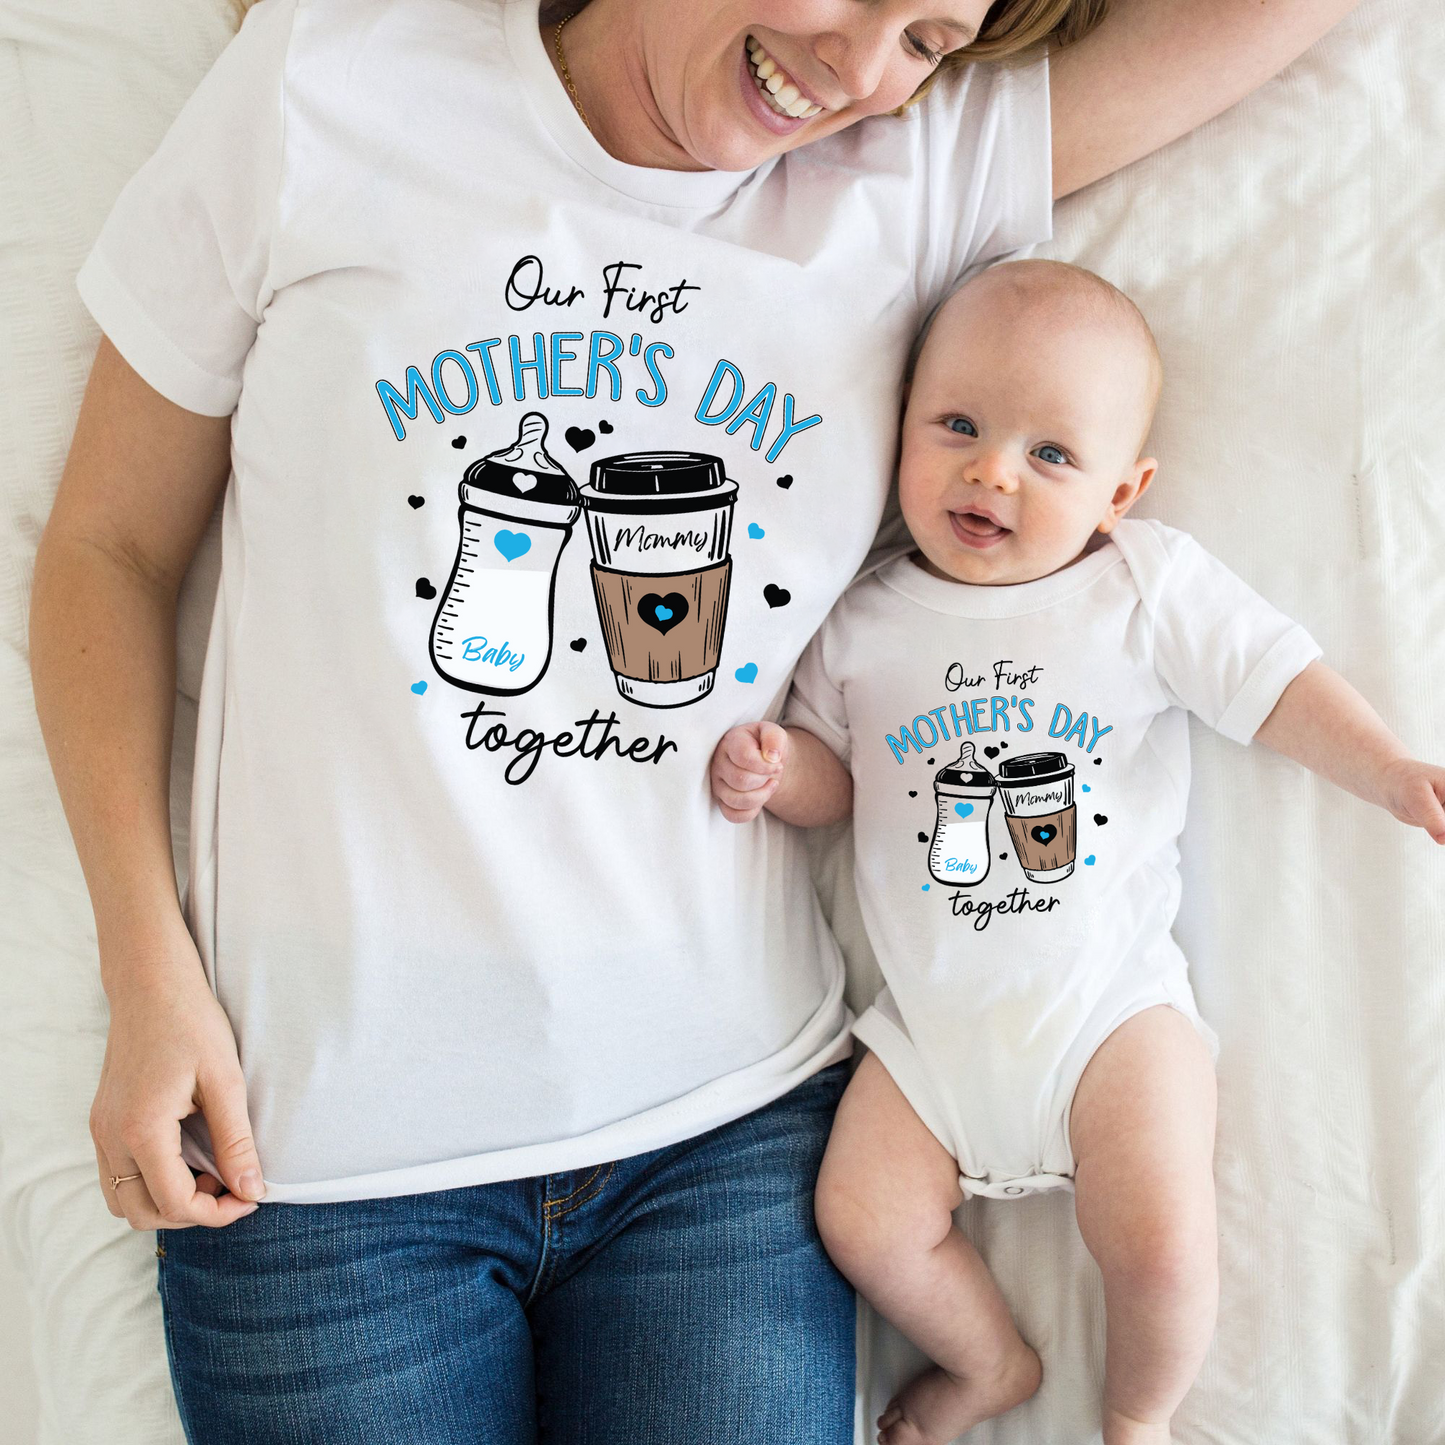 Unser Erster Muttertag-Shirt  Personalisiertes Set für Mutter und Baby